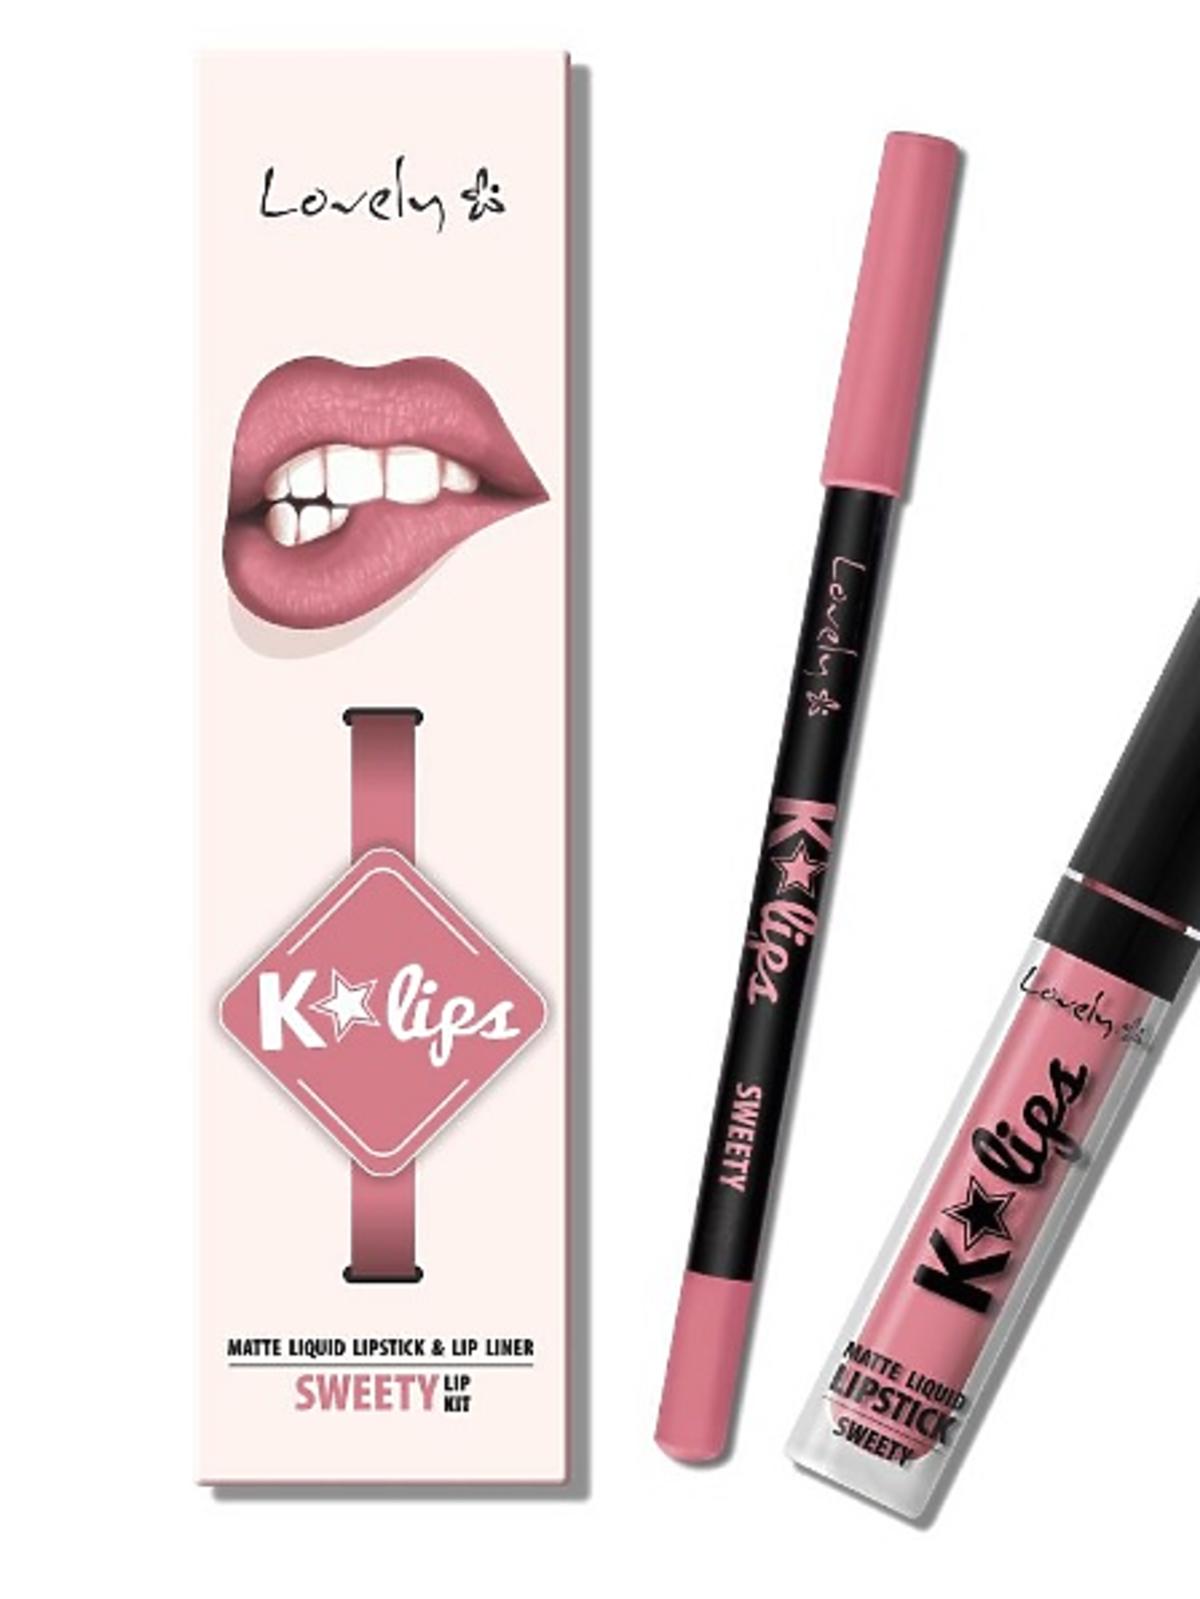 Lovely - K'Lips, Matte Liquid Lipstick & Lip Liner, Lip Kit